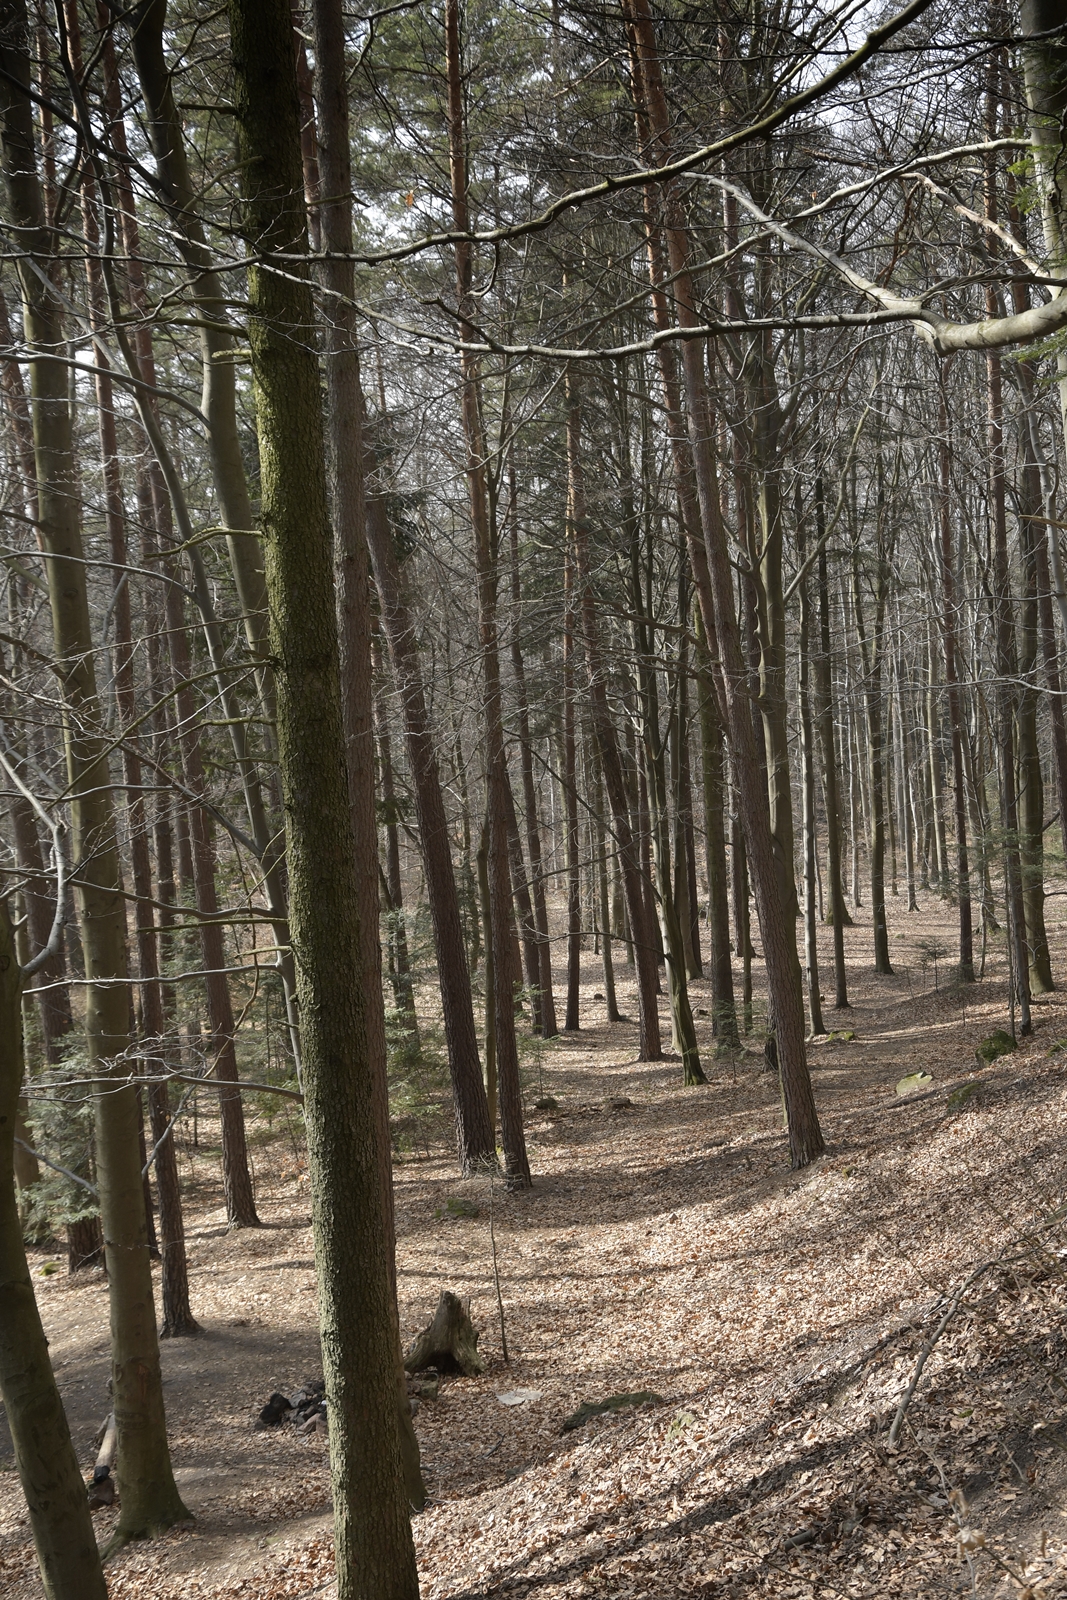 Las jest całkiem gęsty, drzewa w Kamieniu Michniowskim są strzeliste i smukłe.